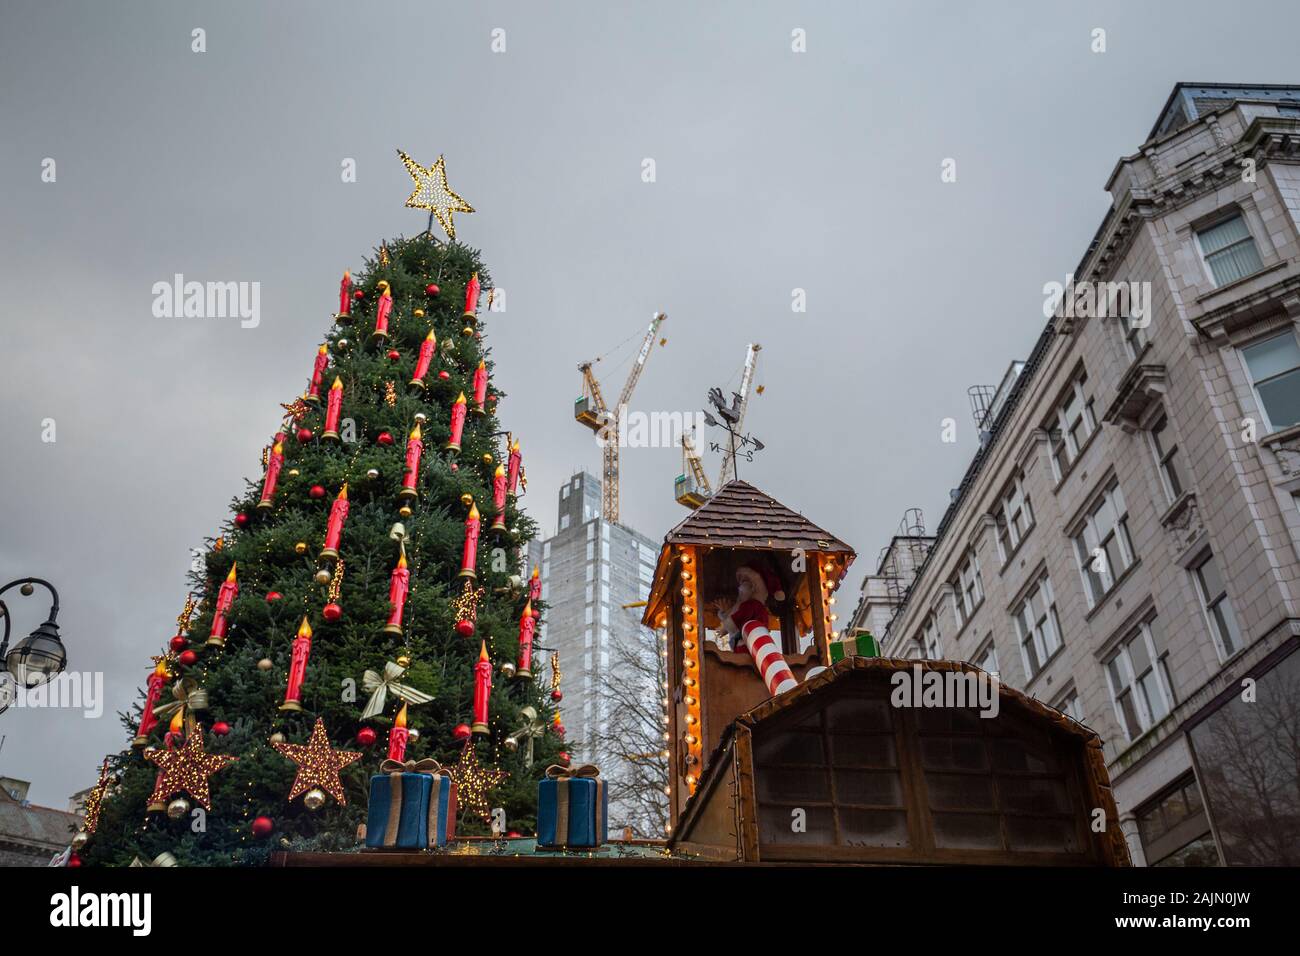 BIRMINGHAM, VEREINIGTES KÖNIGREICH - Dezember 15, 2019: Auf der Suche nach Weihnachtsbaum am Victoria Square gegen Stadt Gebäude Stockfoto